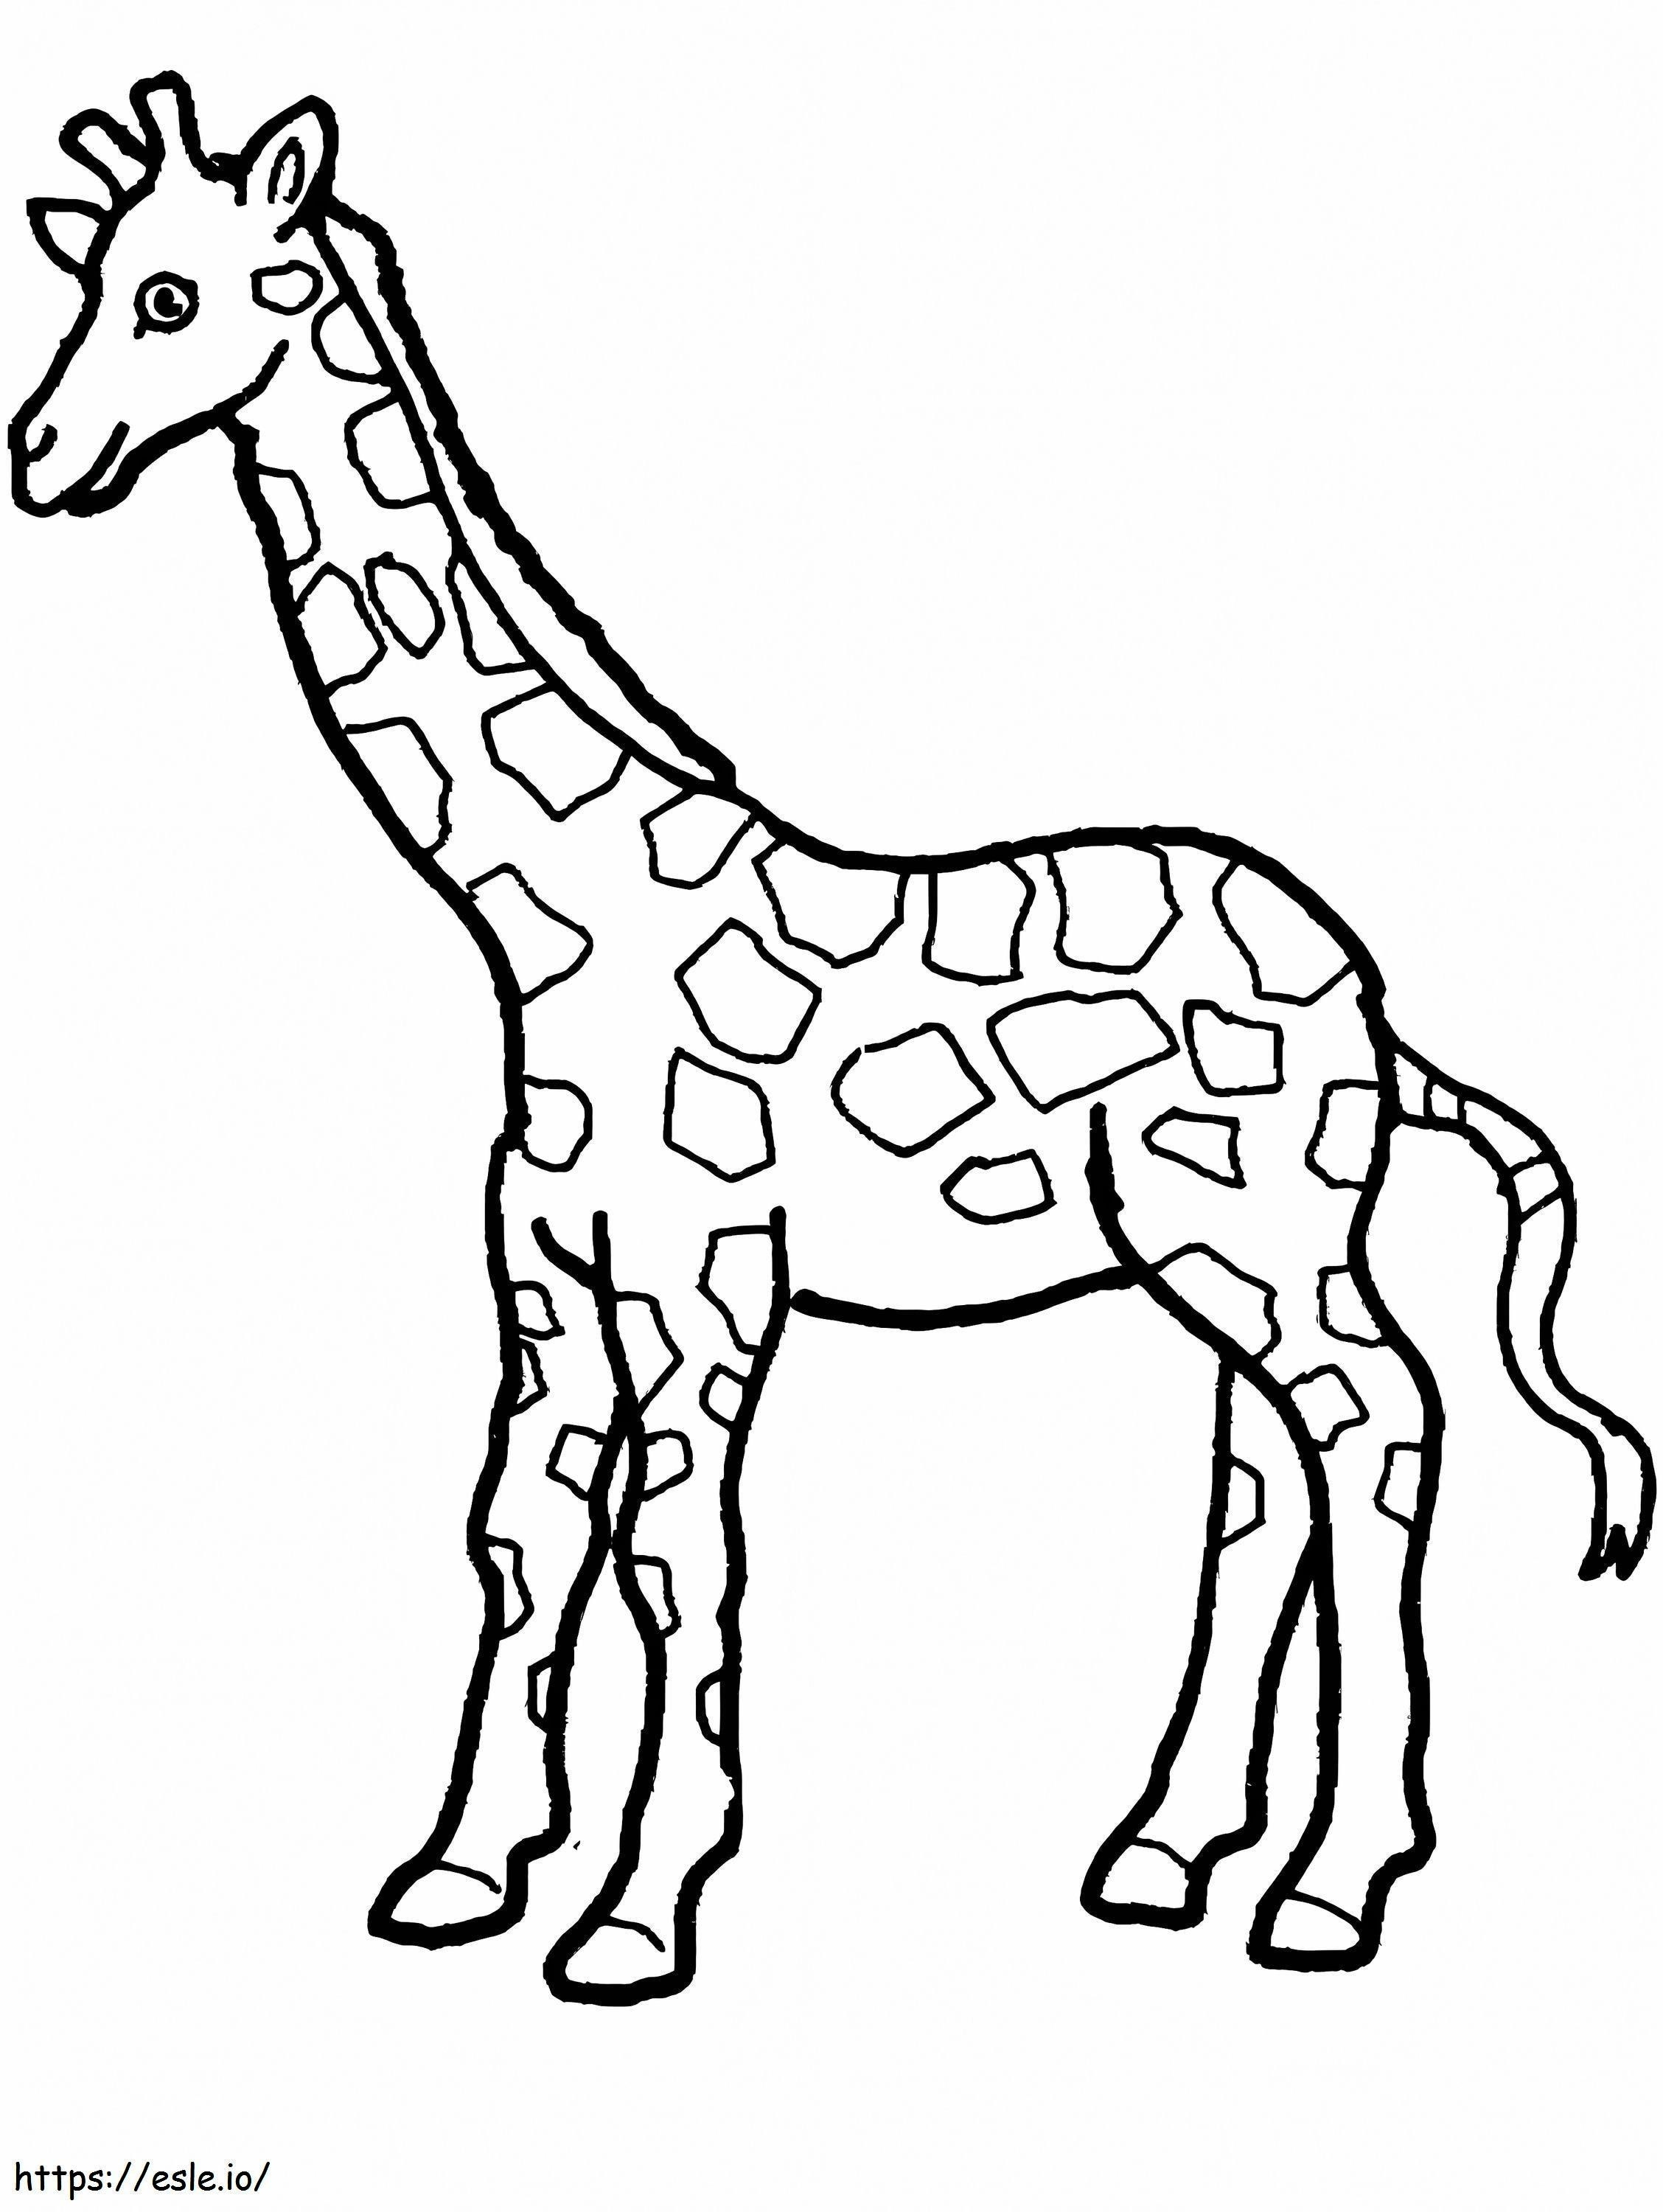 Una giraffa da colorare